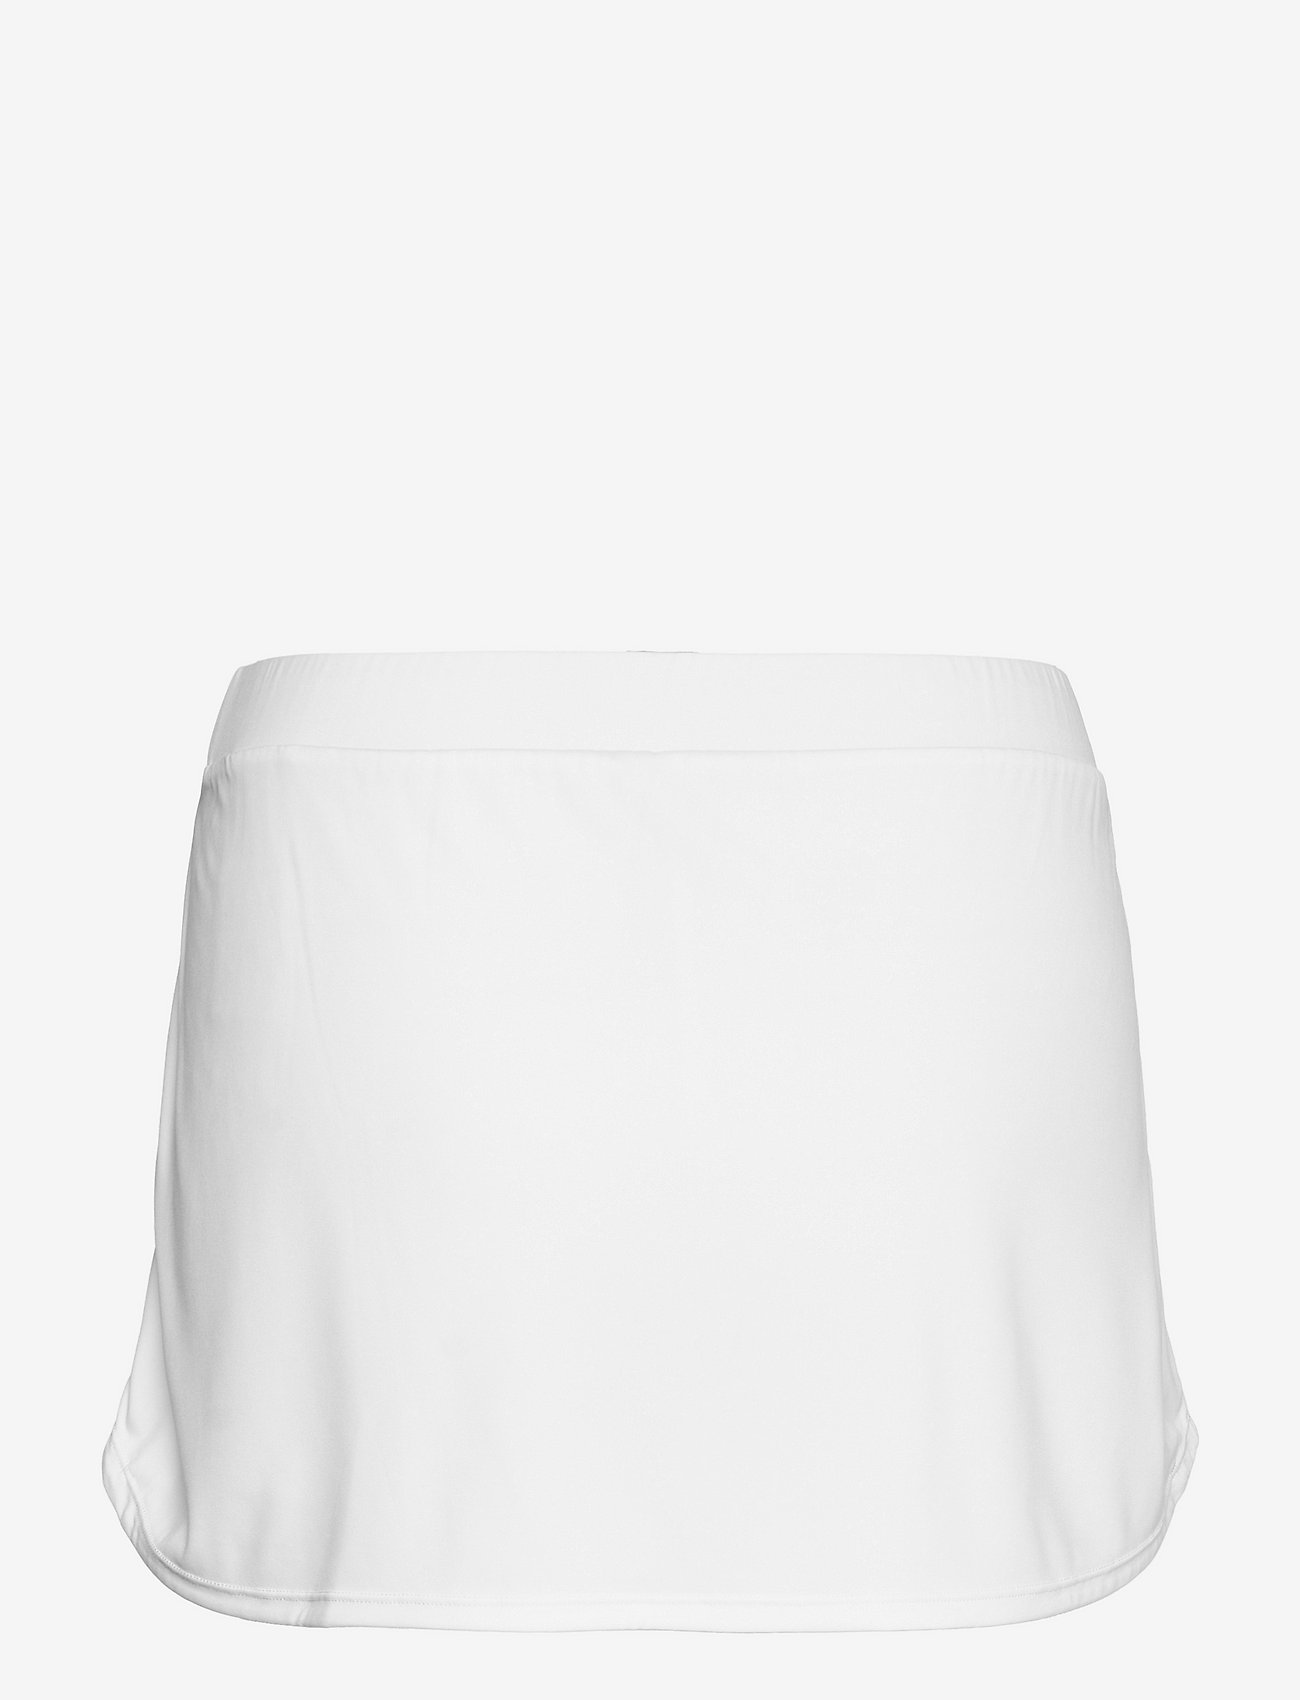 Asics - COURT W SKORT - kjoler & skjørt - brilliant white - 1